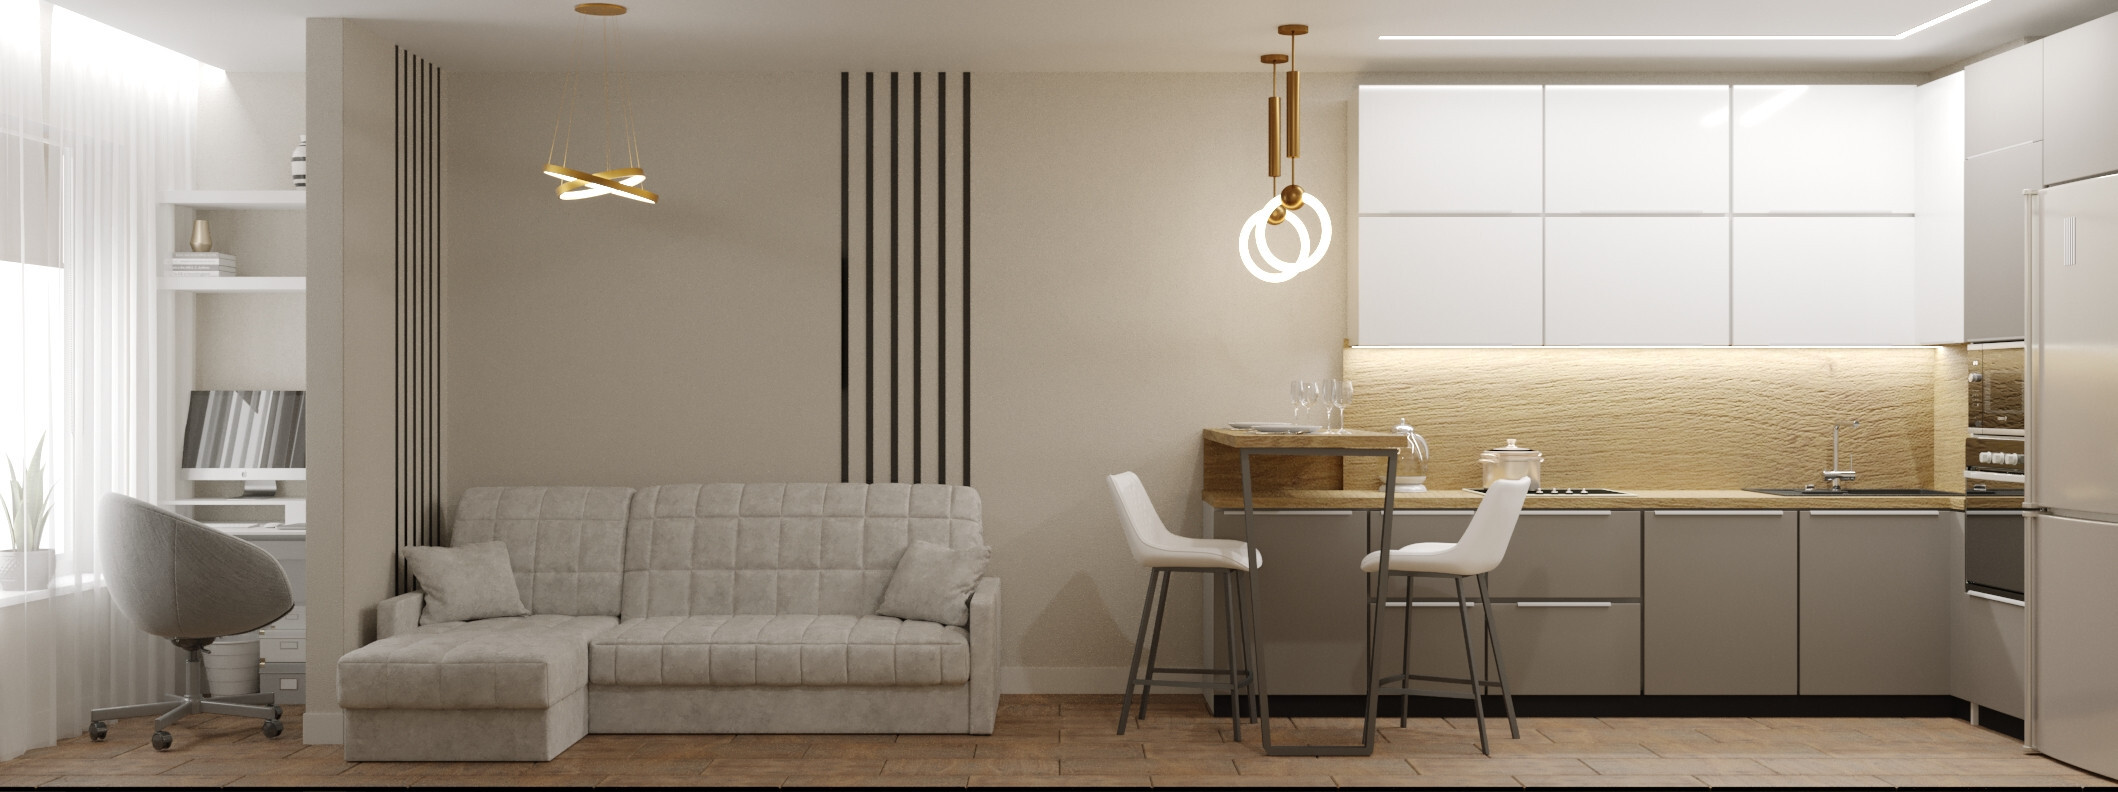 Интерьер кухни с рейками с подсветкой и подсветкой настенной в современном стиле